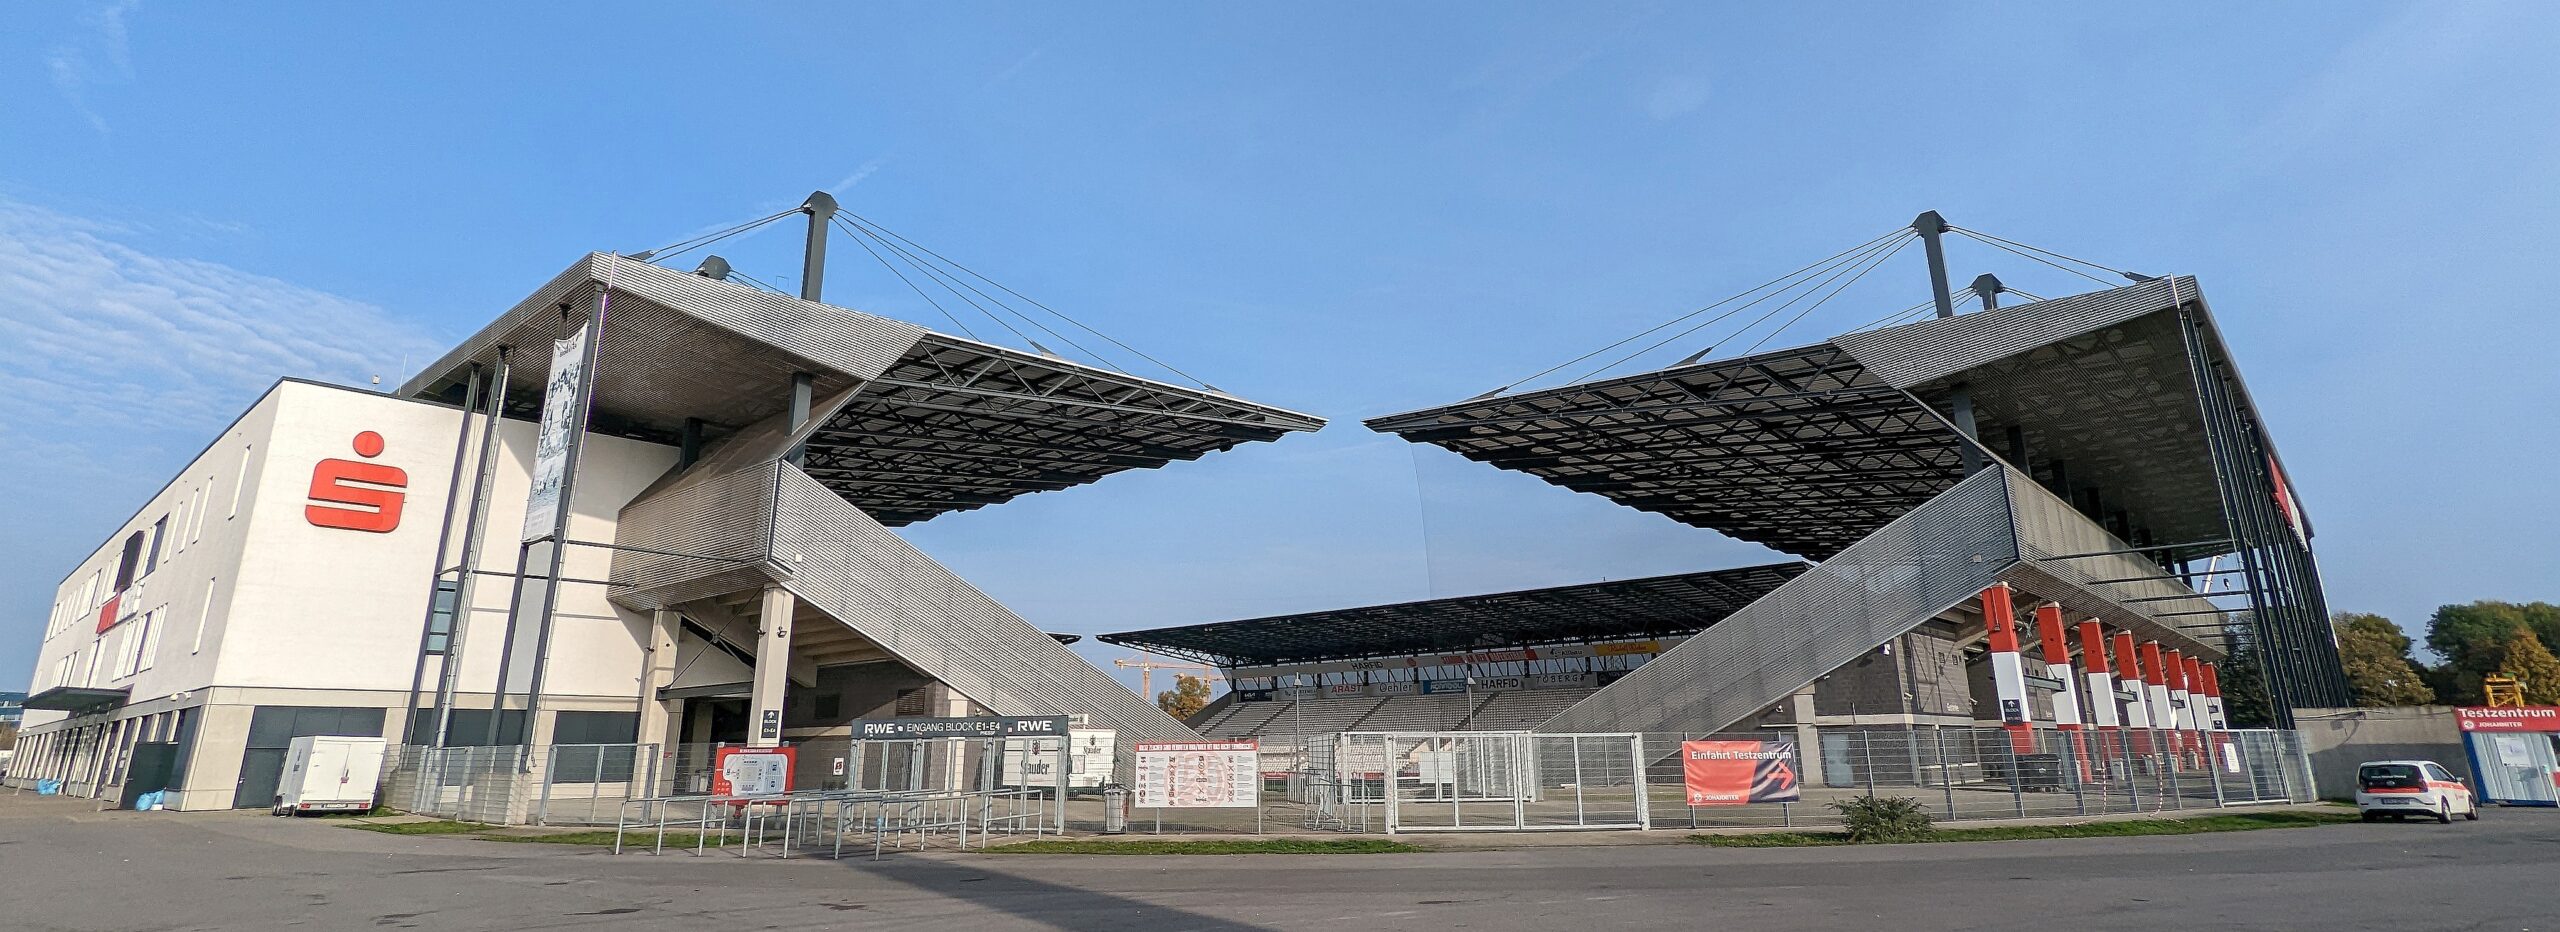 Die Stadionbaustelle in Essen ist inzwischen eine 20.000-Mann-Arena